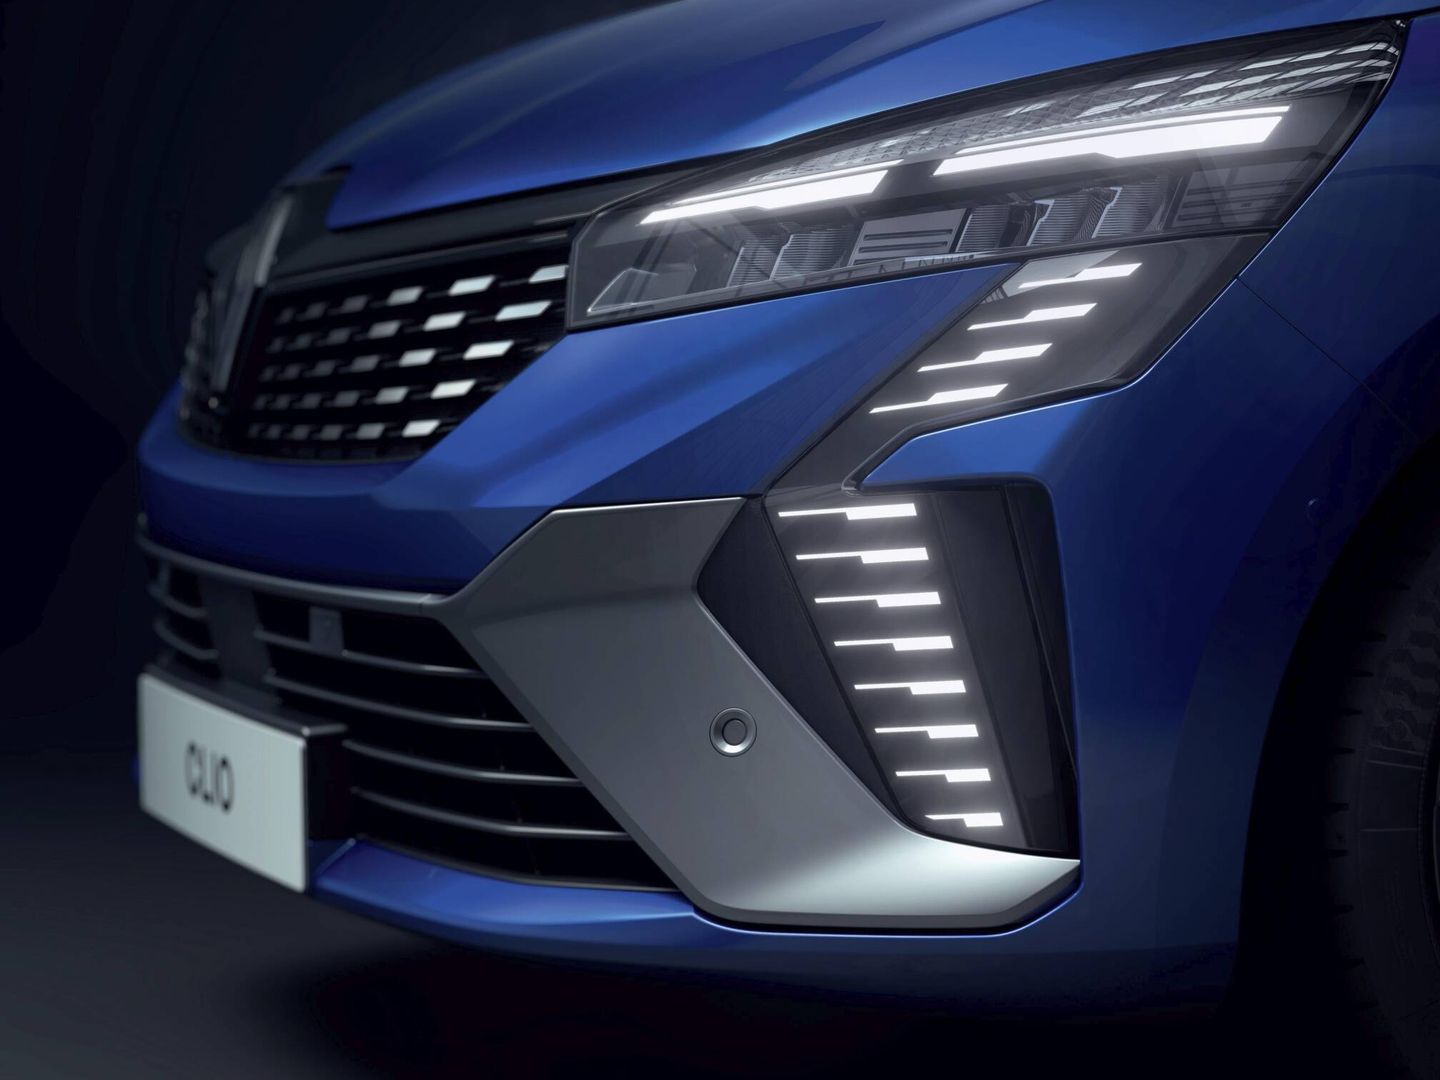 La firma luminosa vertical es nueva, y se empleará desde ahora en los nuevos Renault.